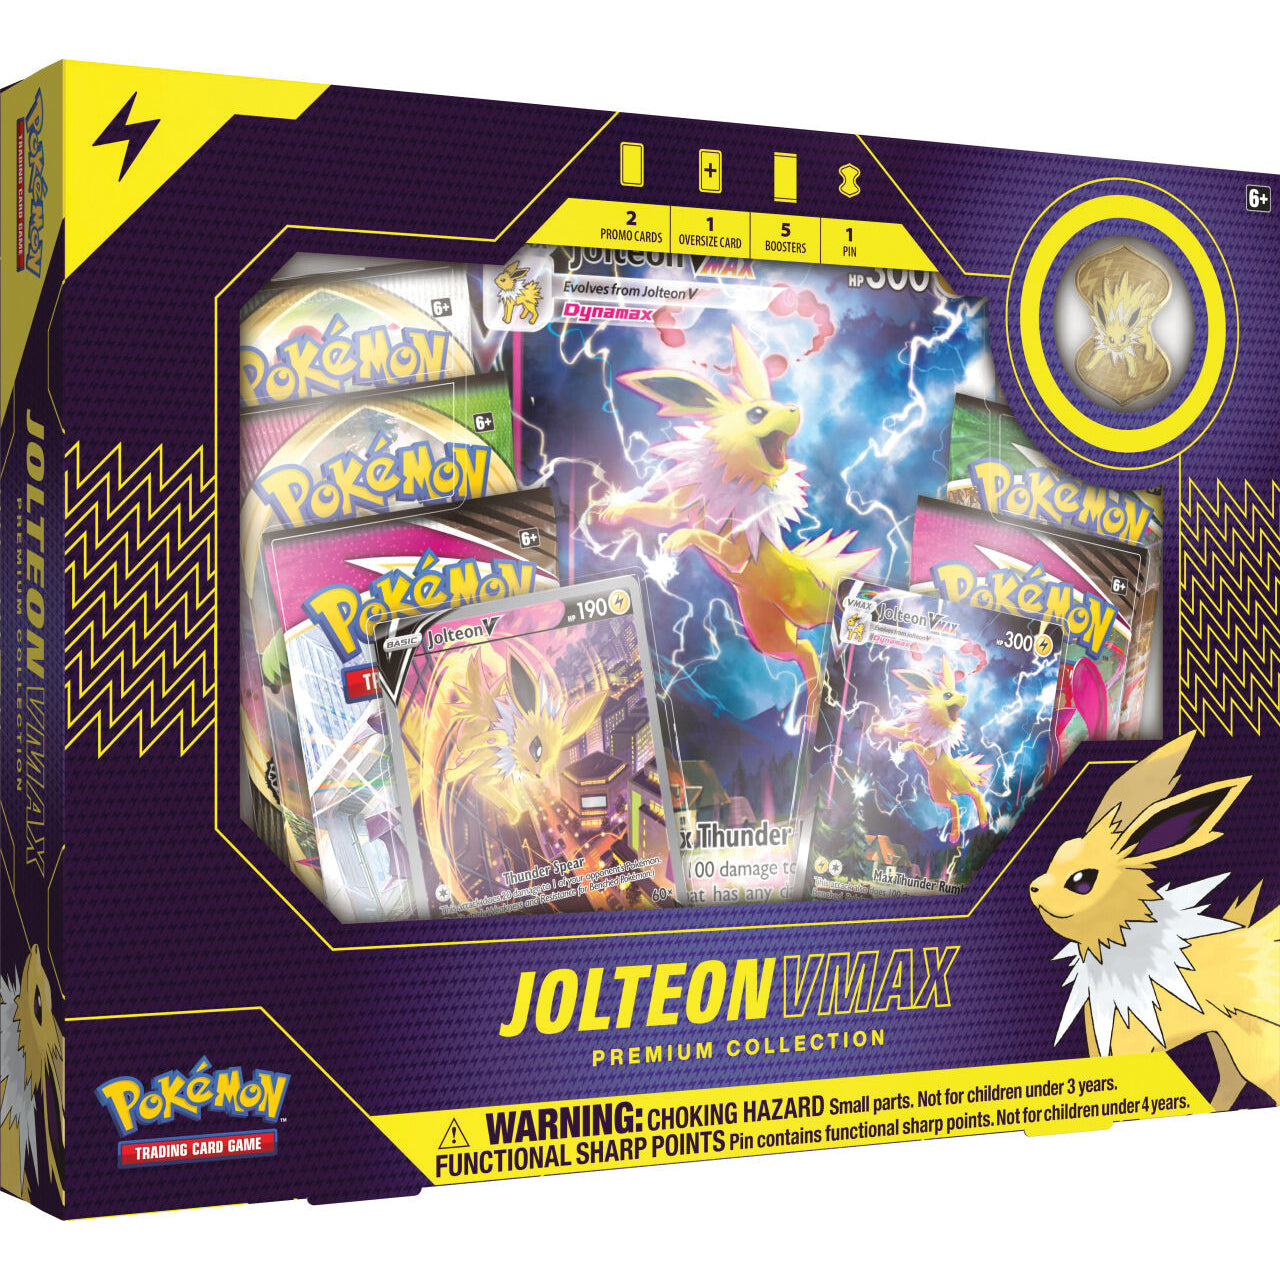 Pokemon Jolteon VMAX premium collection